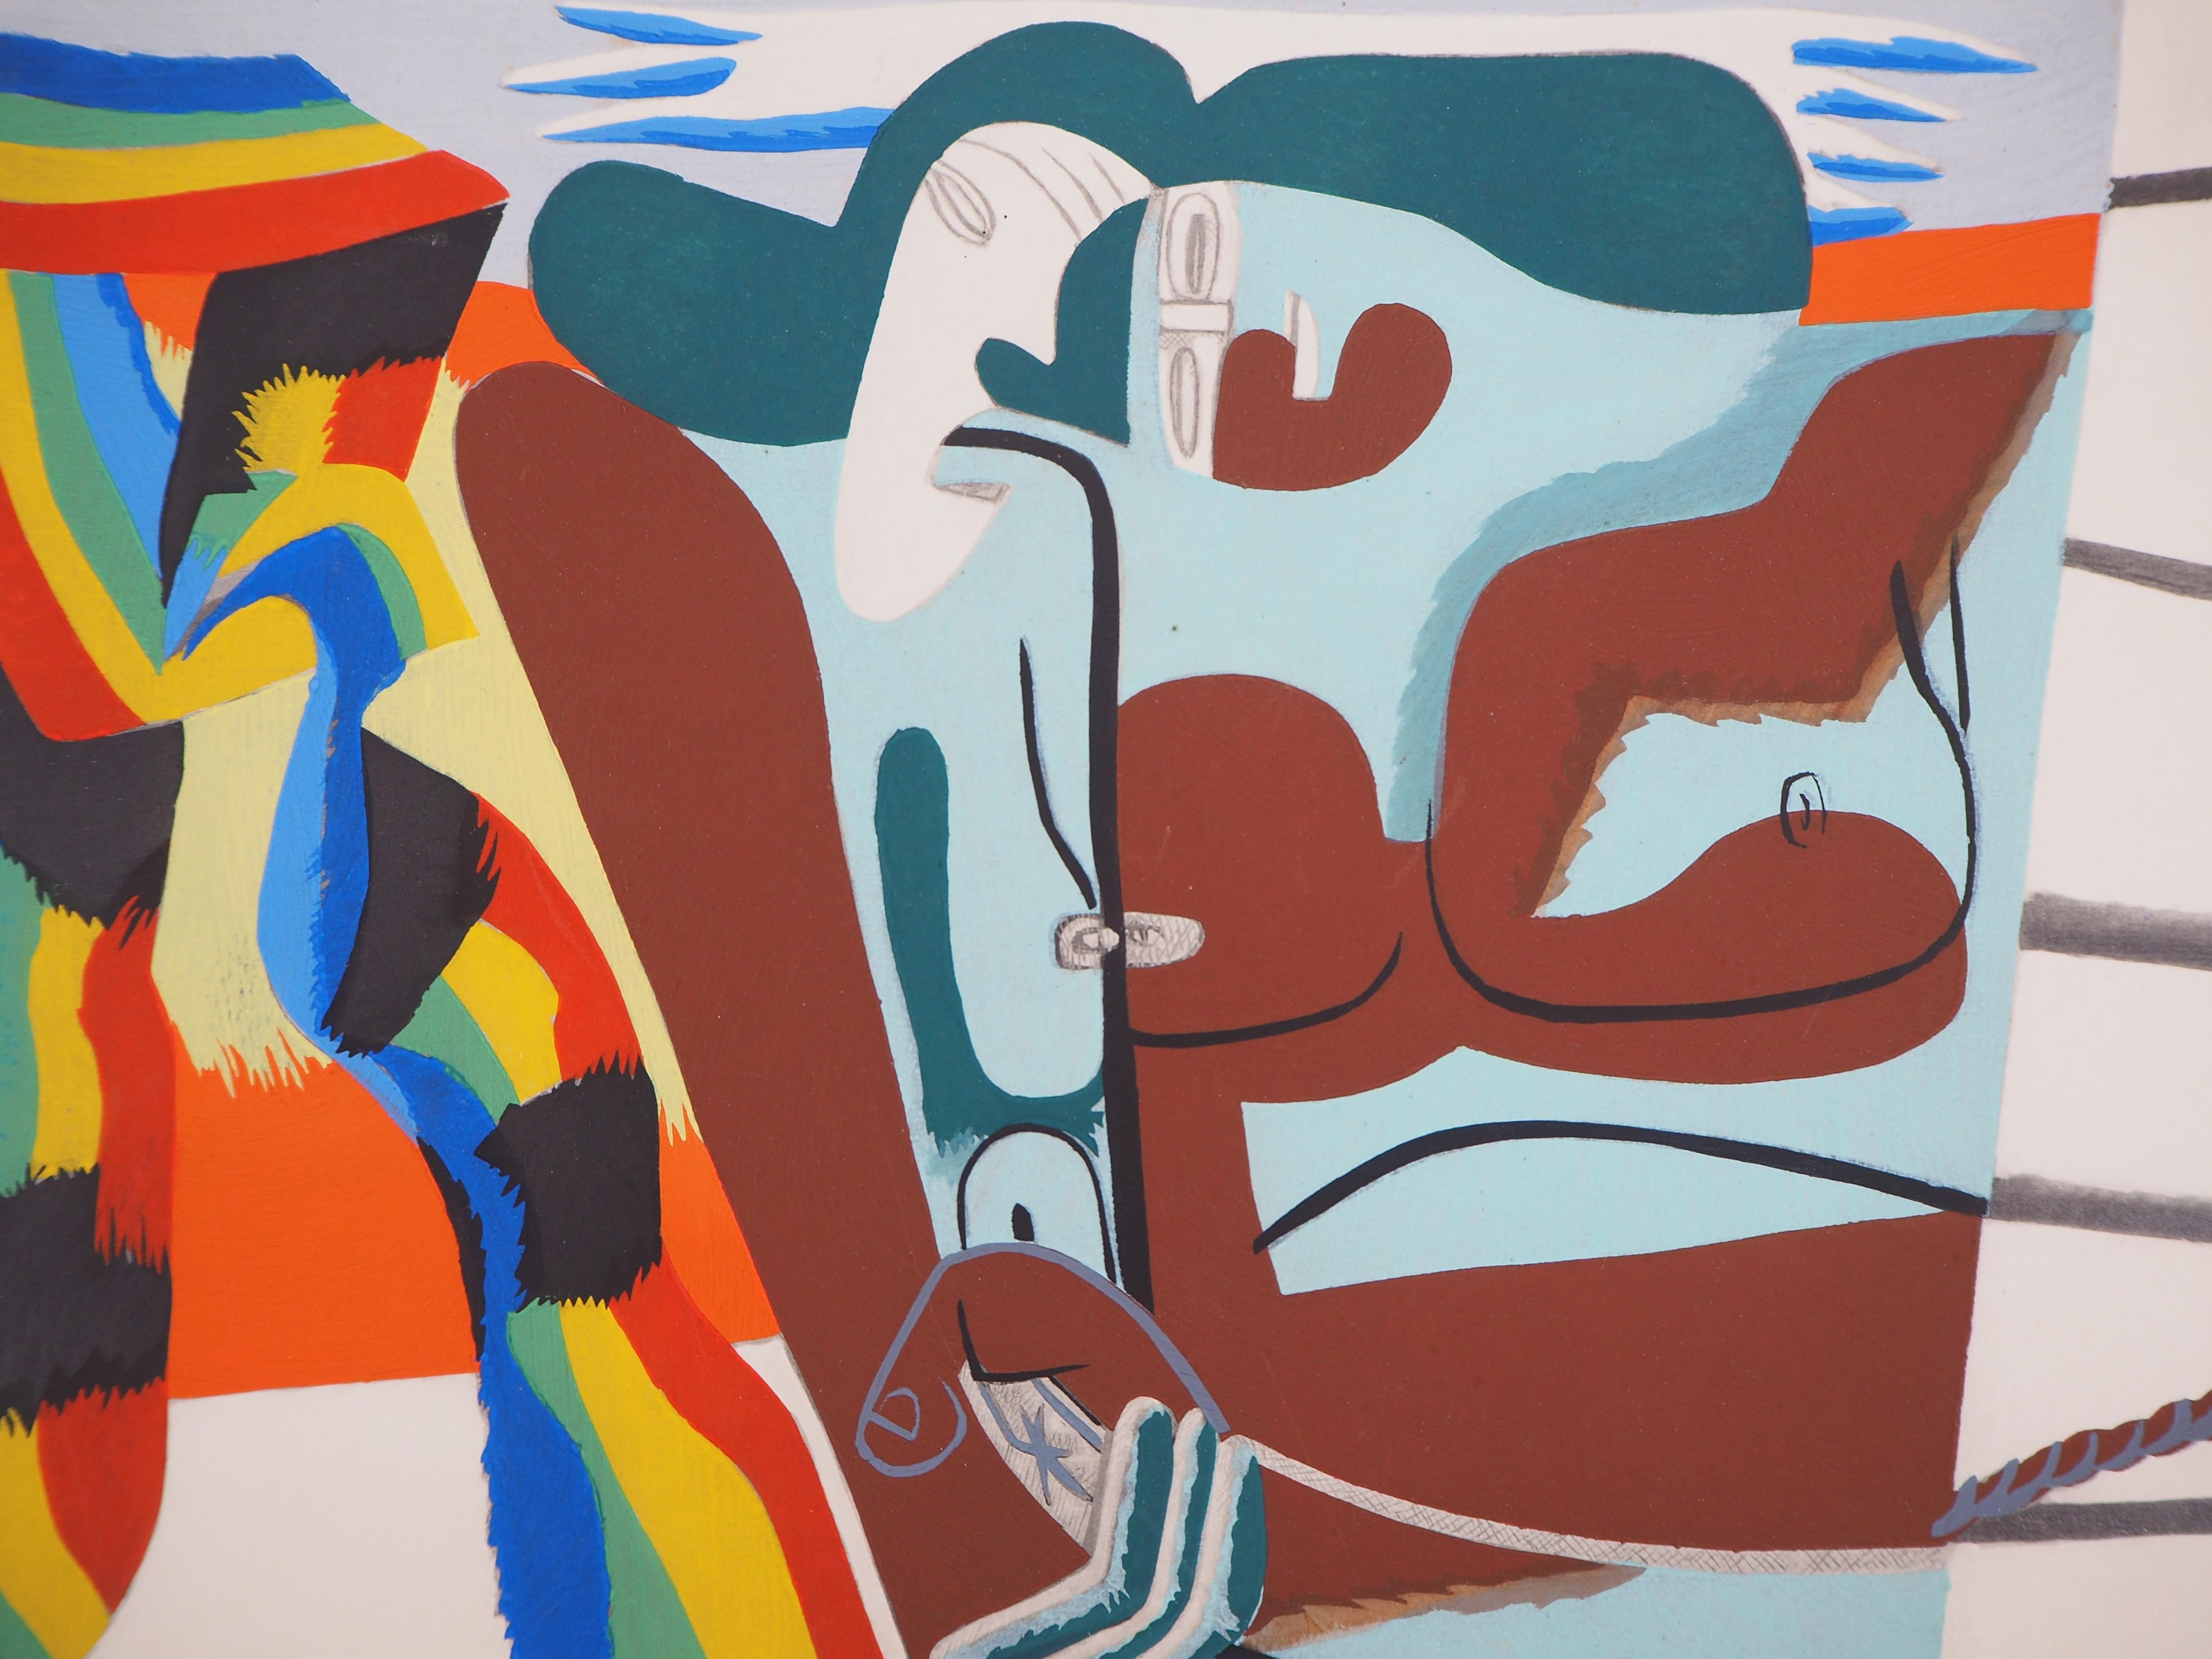 Pride Pride: Zwei Frauen mit Regenbogenschal - Lithographie und Aquarell-Schablone (Kubismus), Print, von Le Corbusier